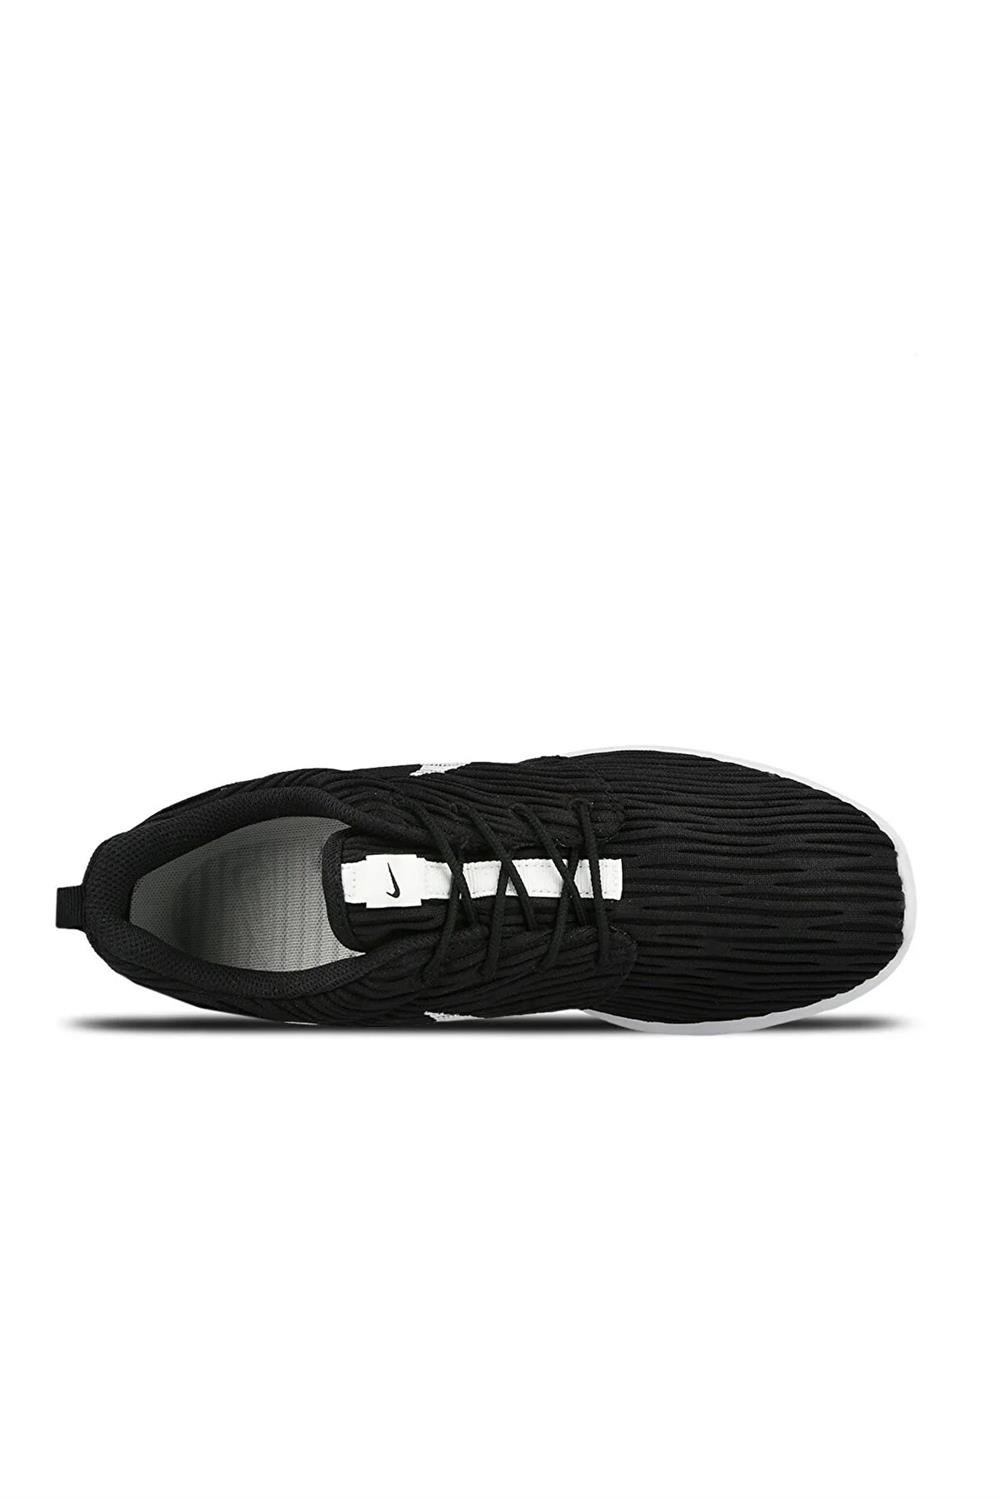 Nike Roshe One Kadın Ayakkabı 833818-010